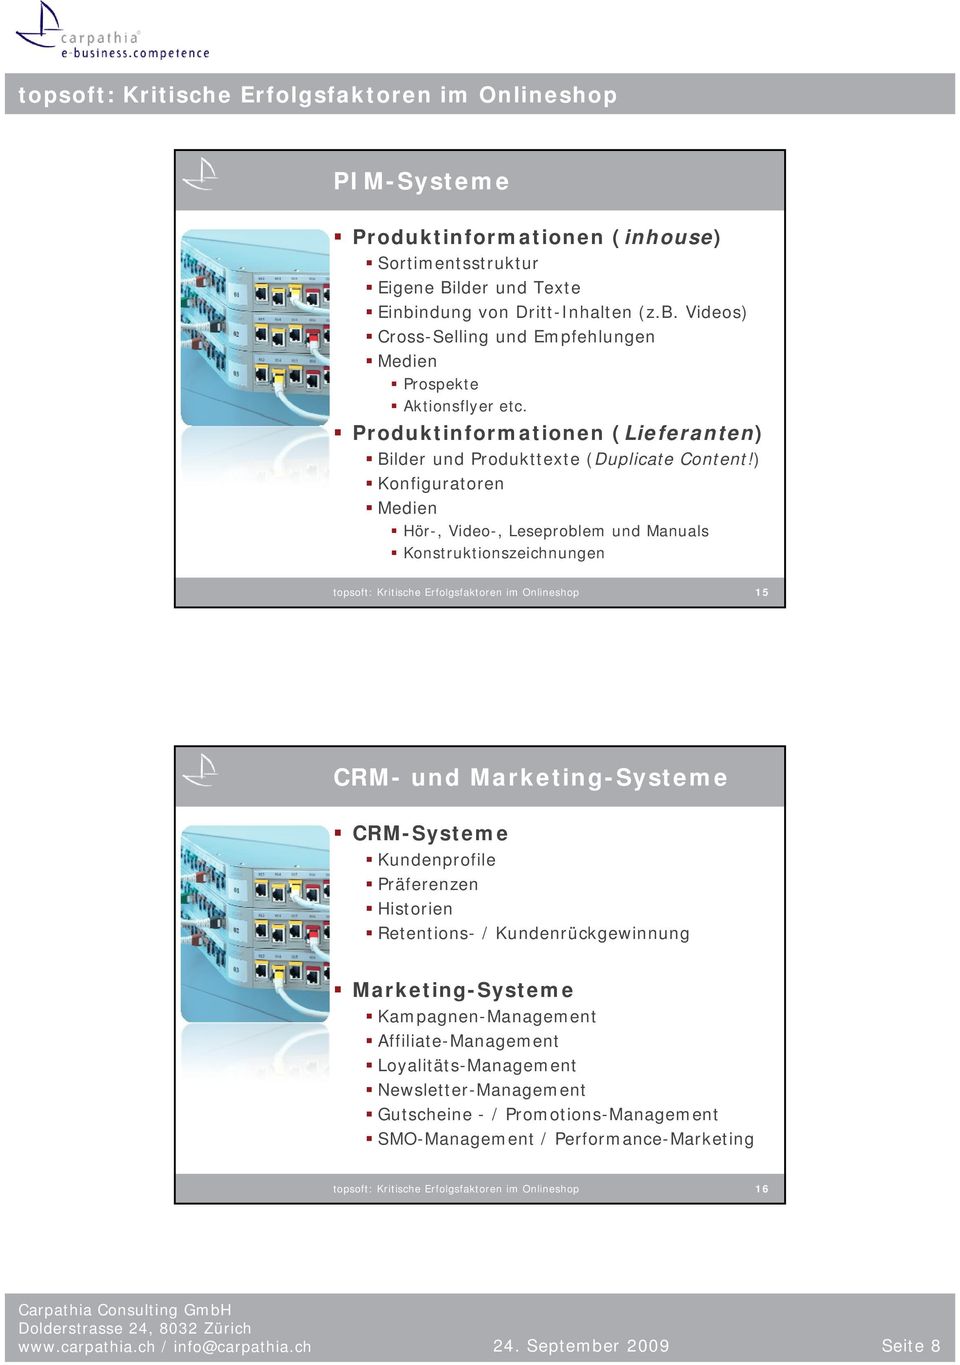 ) Konfiguratoren Medien Hör-, Video-, Leseproblem und Manuals Konstruktionszeichnungen topsoft: Kritische Erfolgsfaktoren im Onlineshop 15 CRM- und Marketing-Systeme CRM-Systeme Kundenprofile